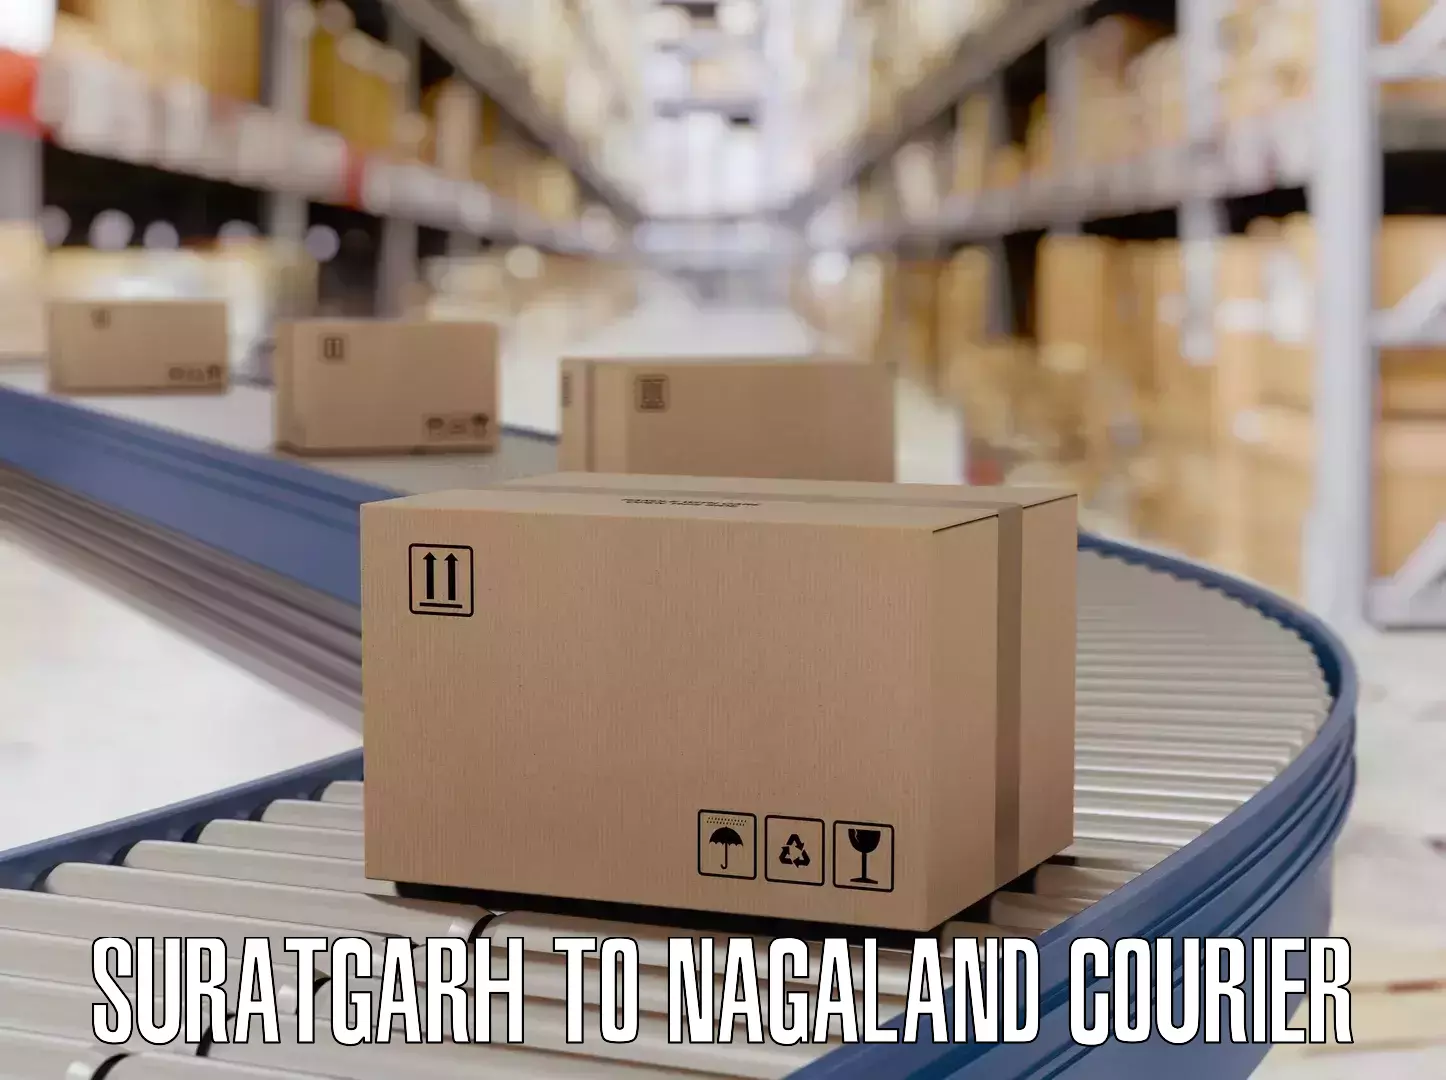 Baggage shipping experts Suratgarh to Nagaland